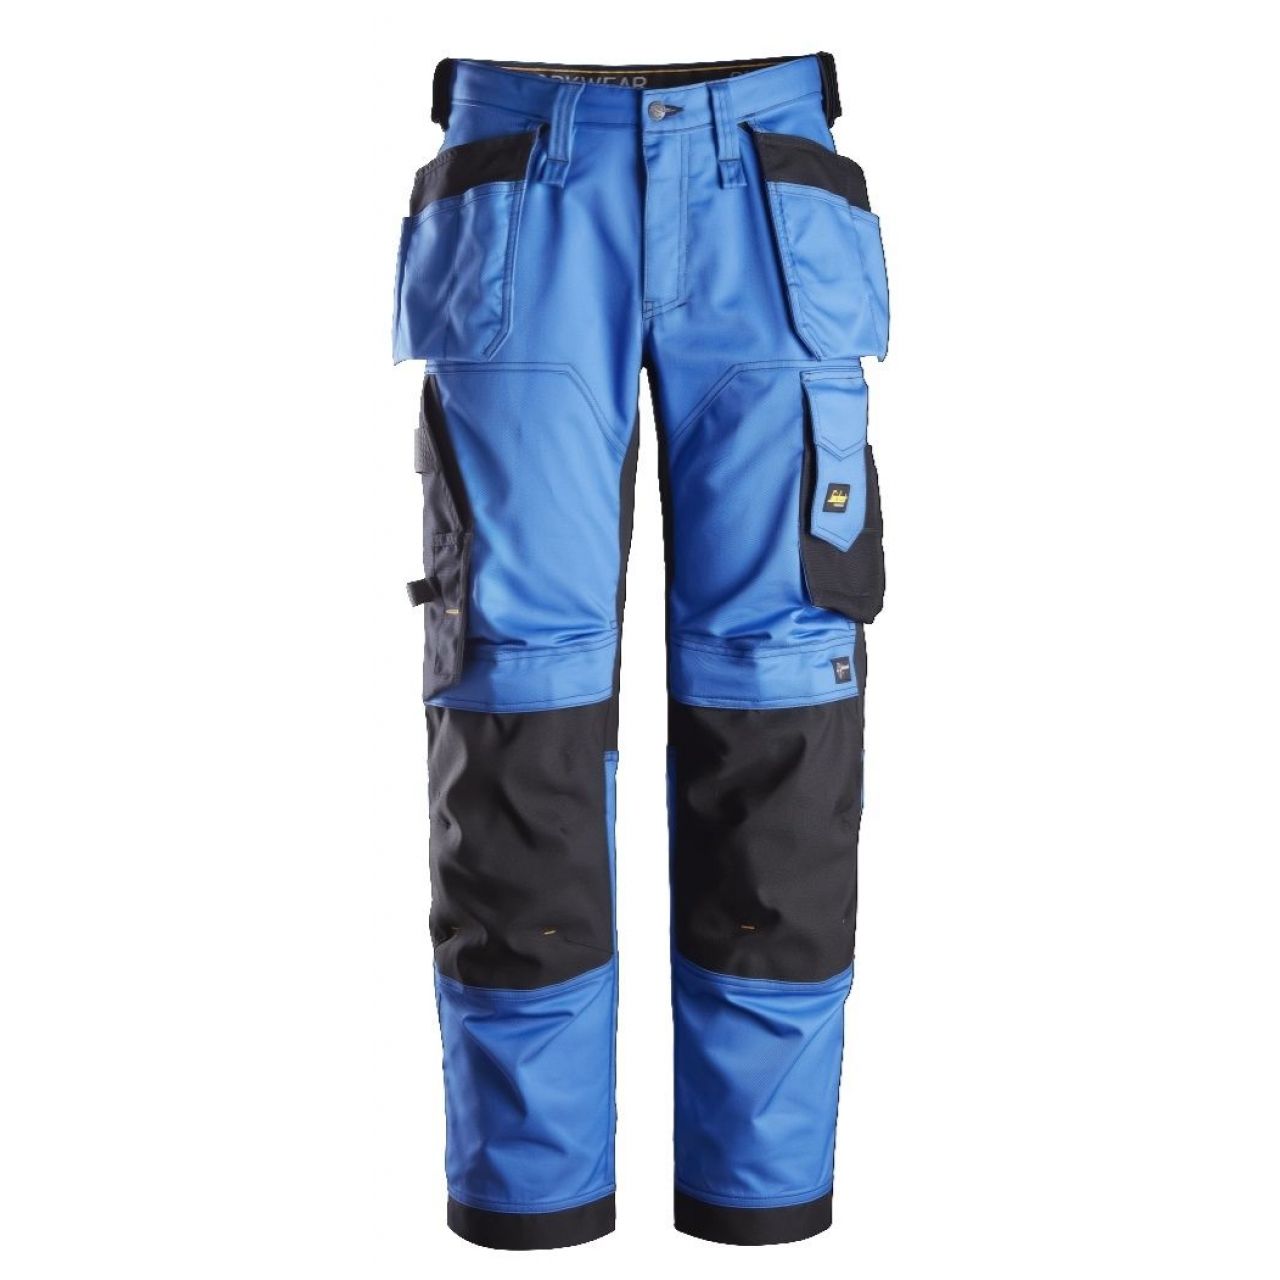 Pantalon elastico ajuste holgado AllroundWork bolsillos flotantes azul-negro talla 254